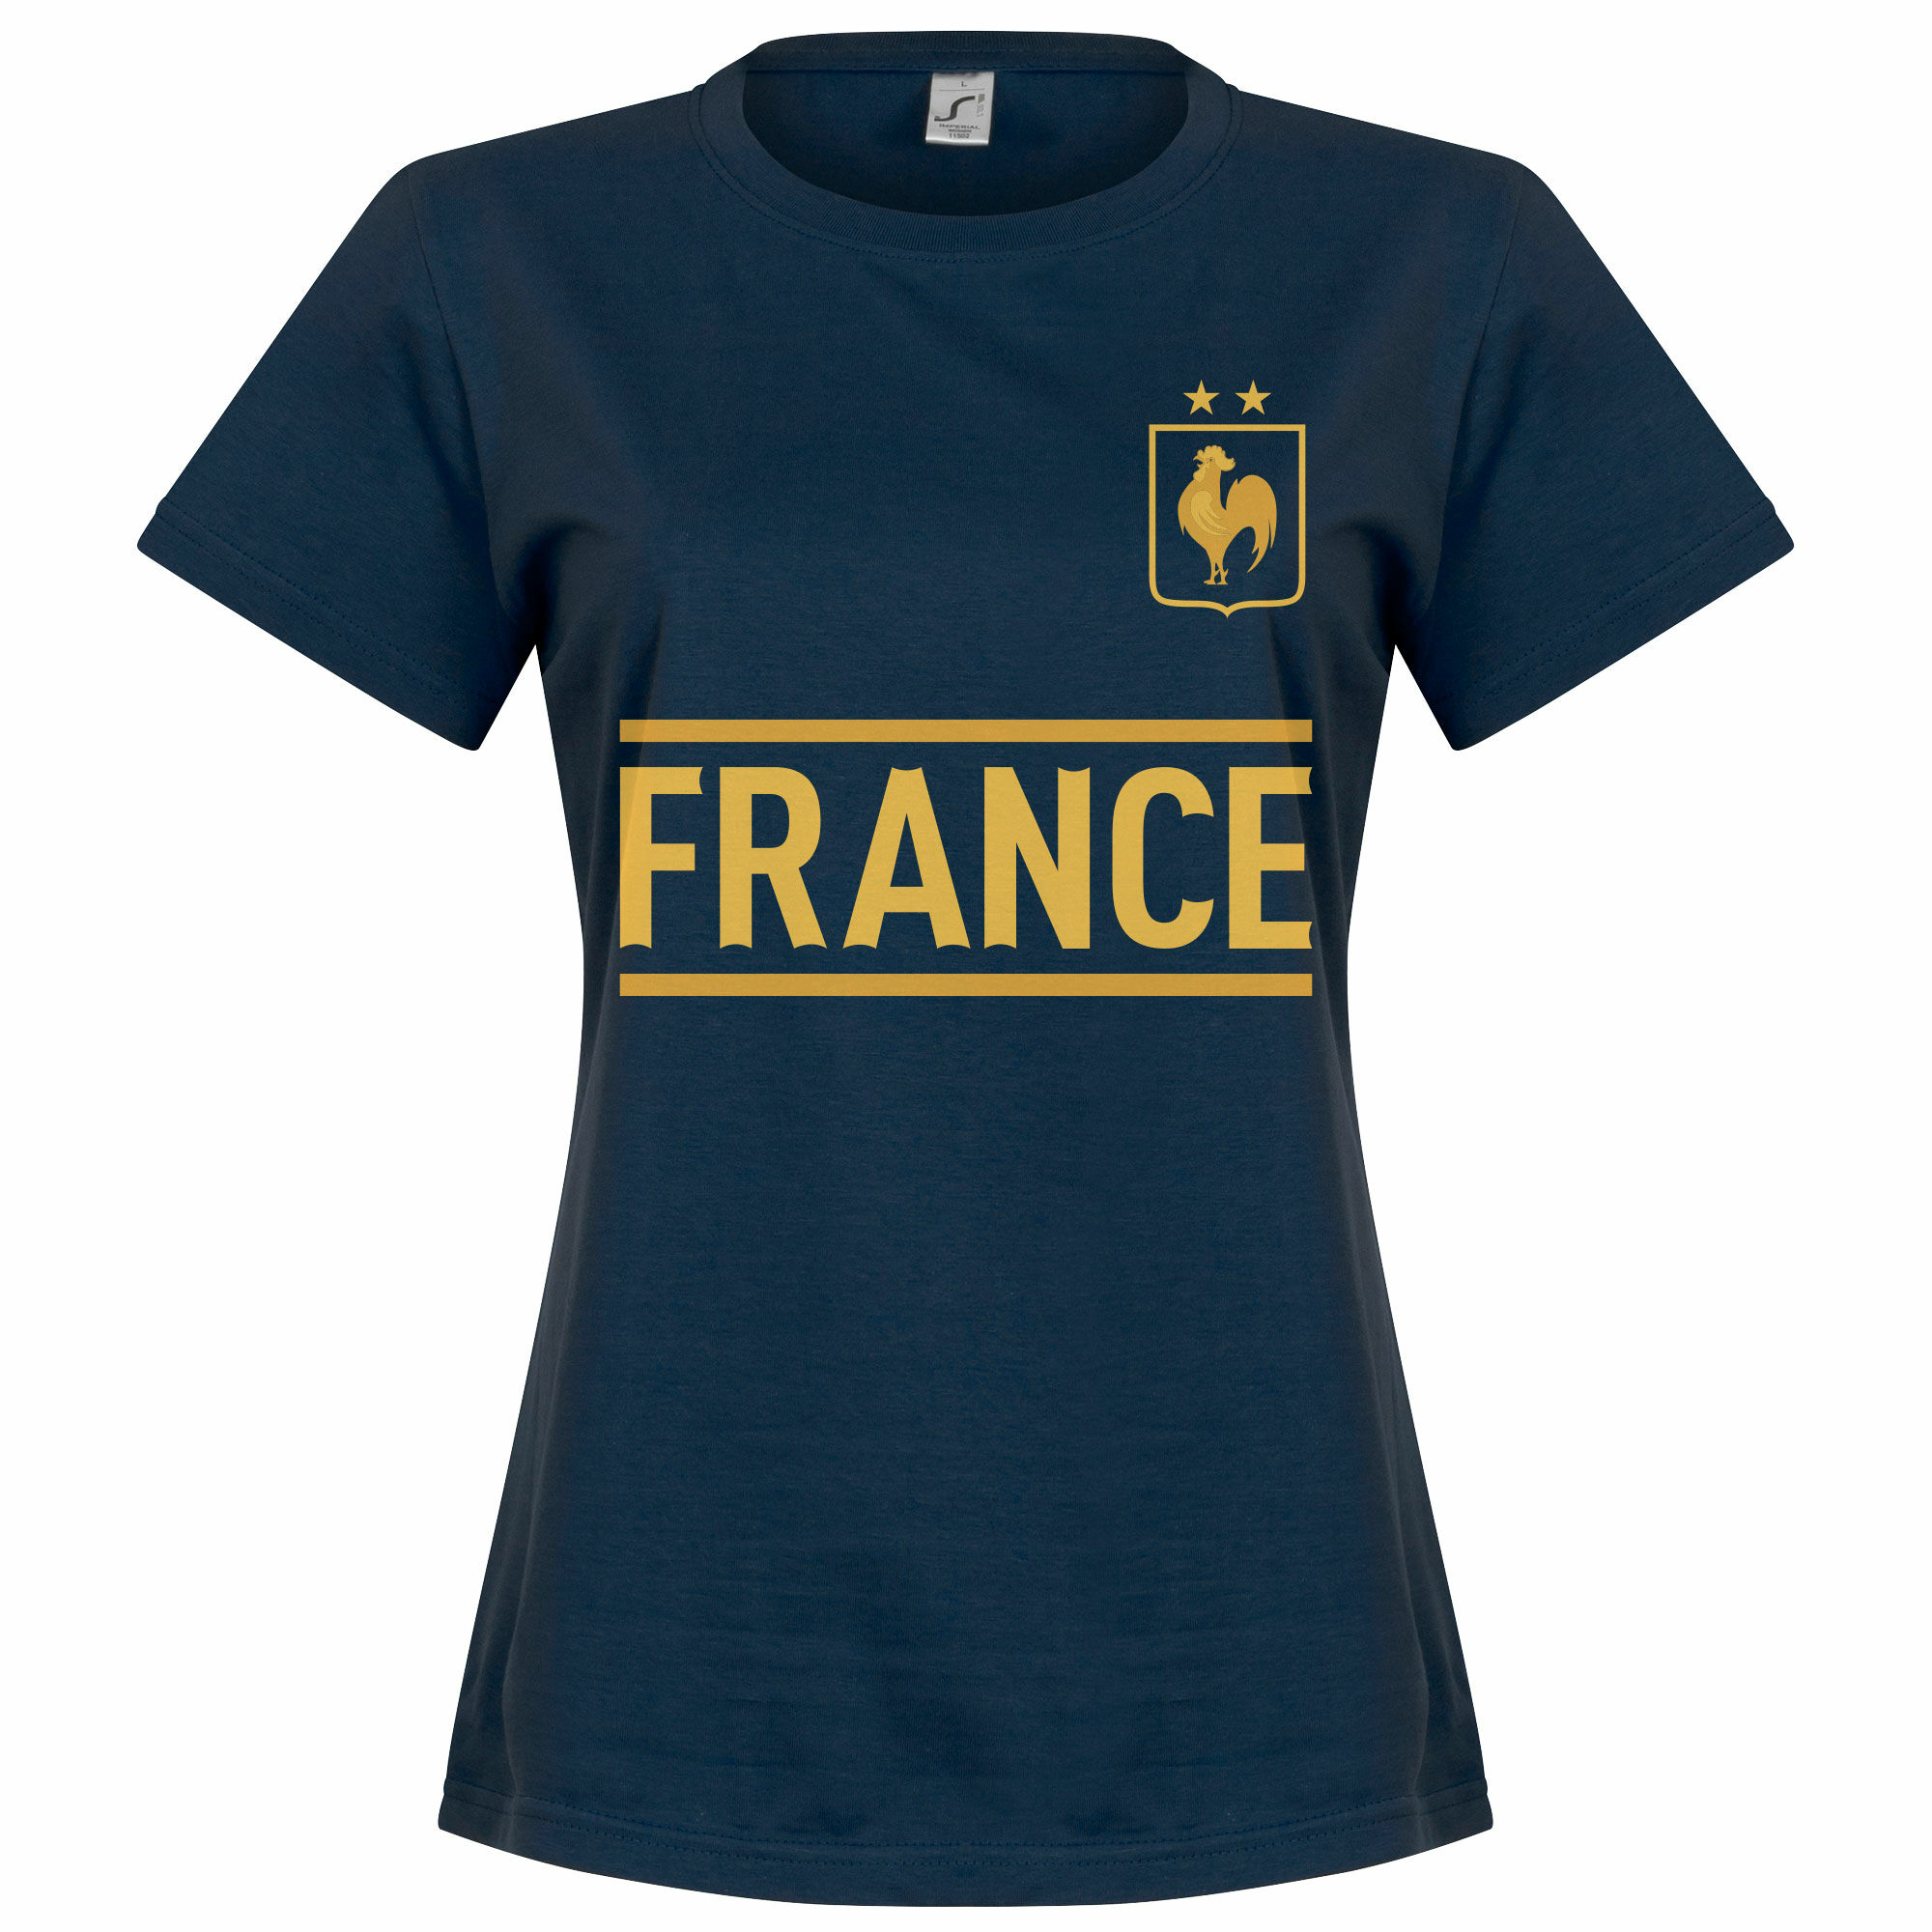 Francie - Tričko dámské - modré